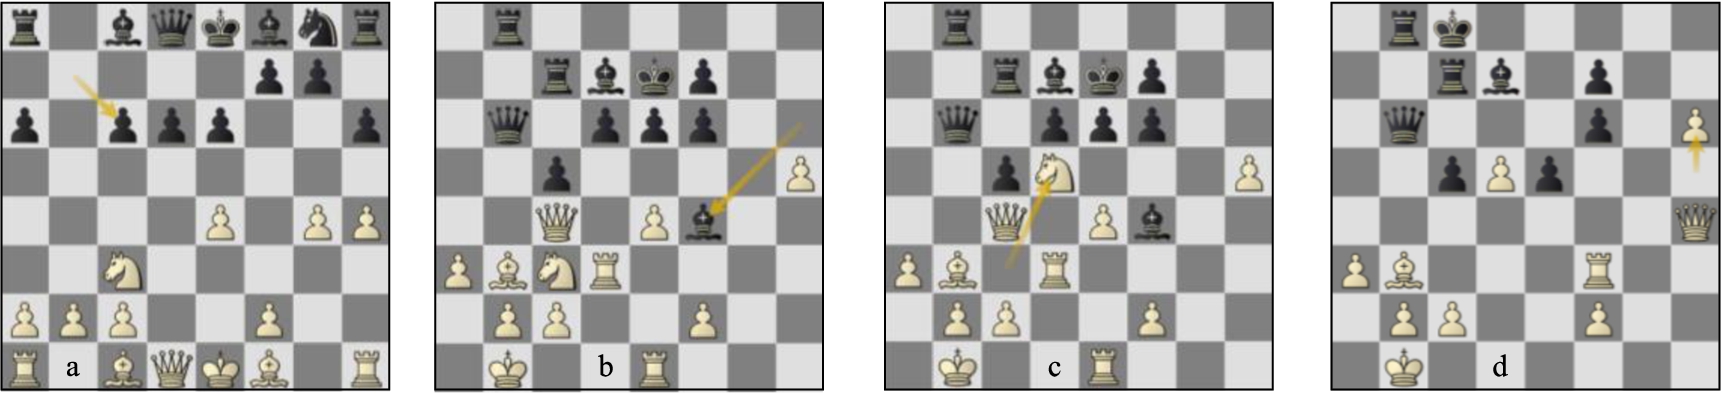 Game 18 St-Lc (a) p9w, (b) p26w, (c) p26b, (d) p31b.